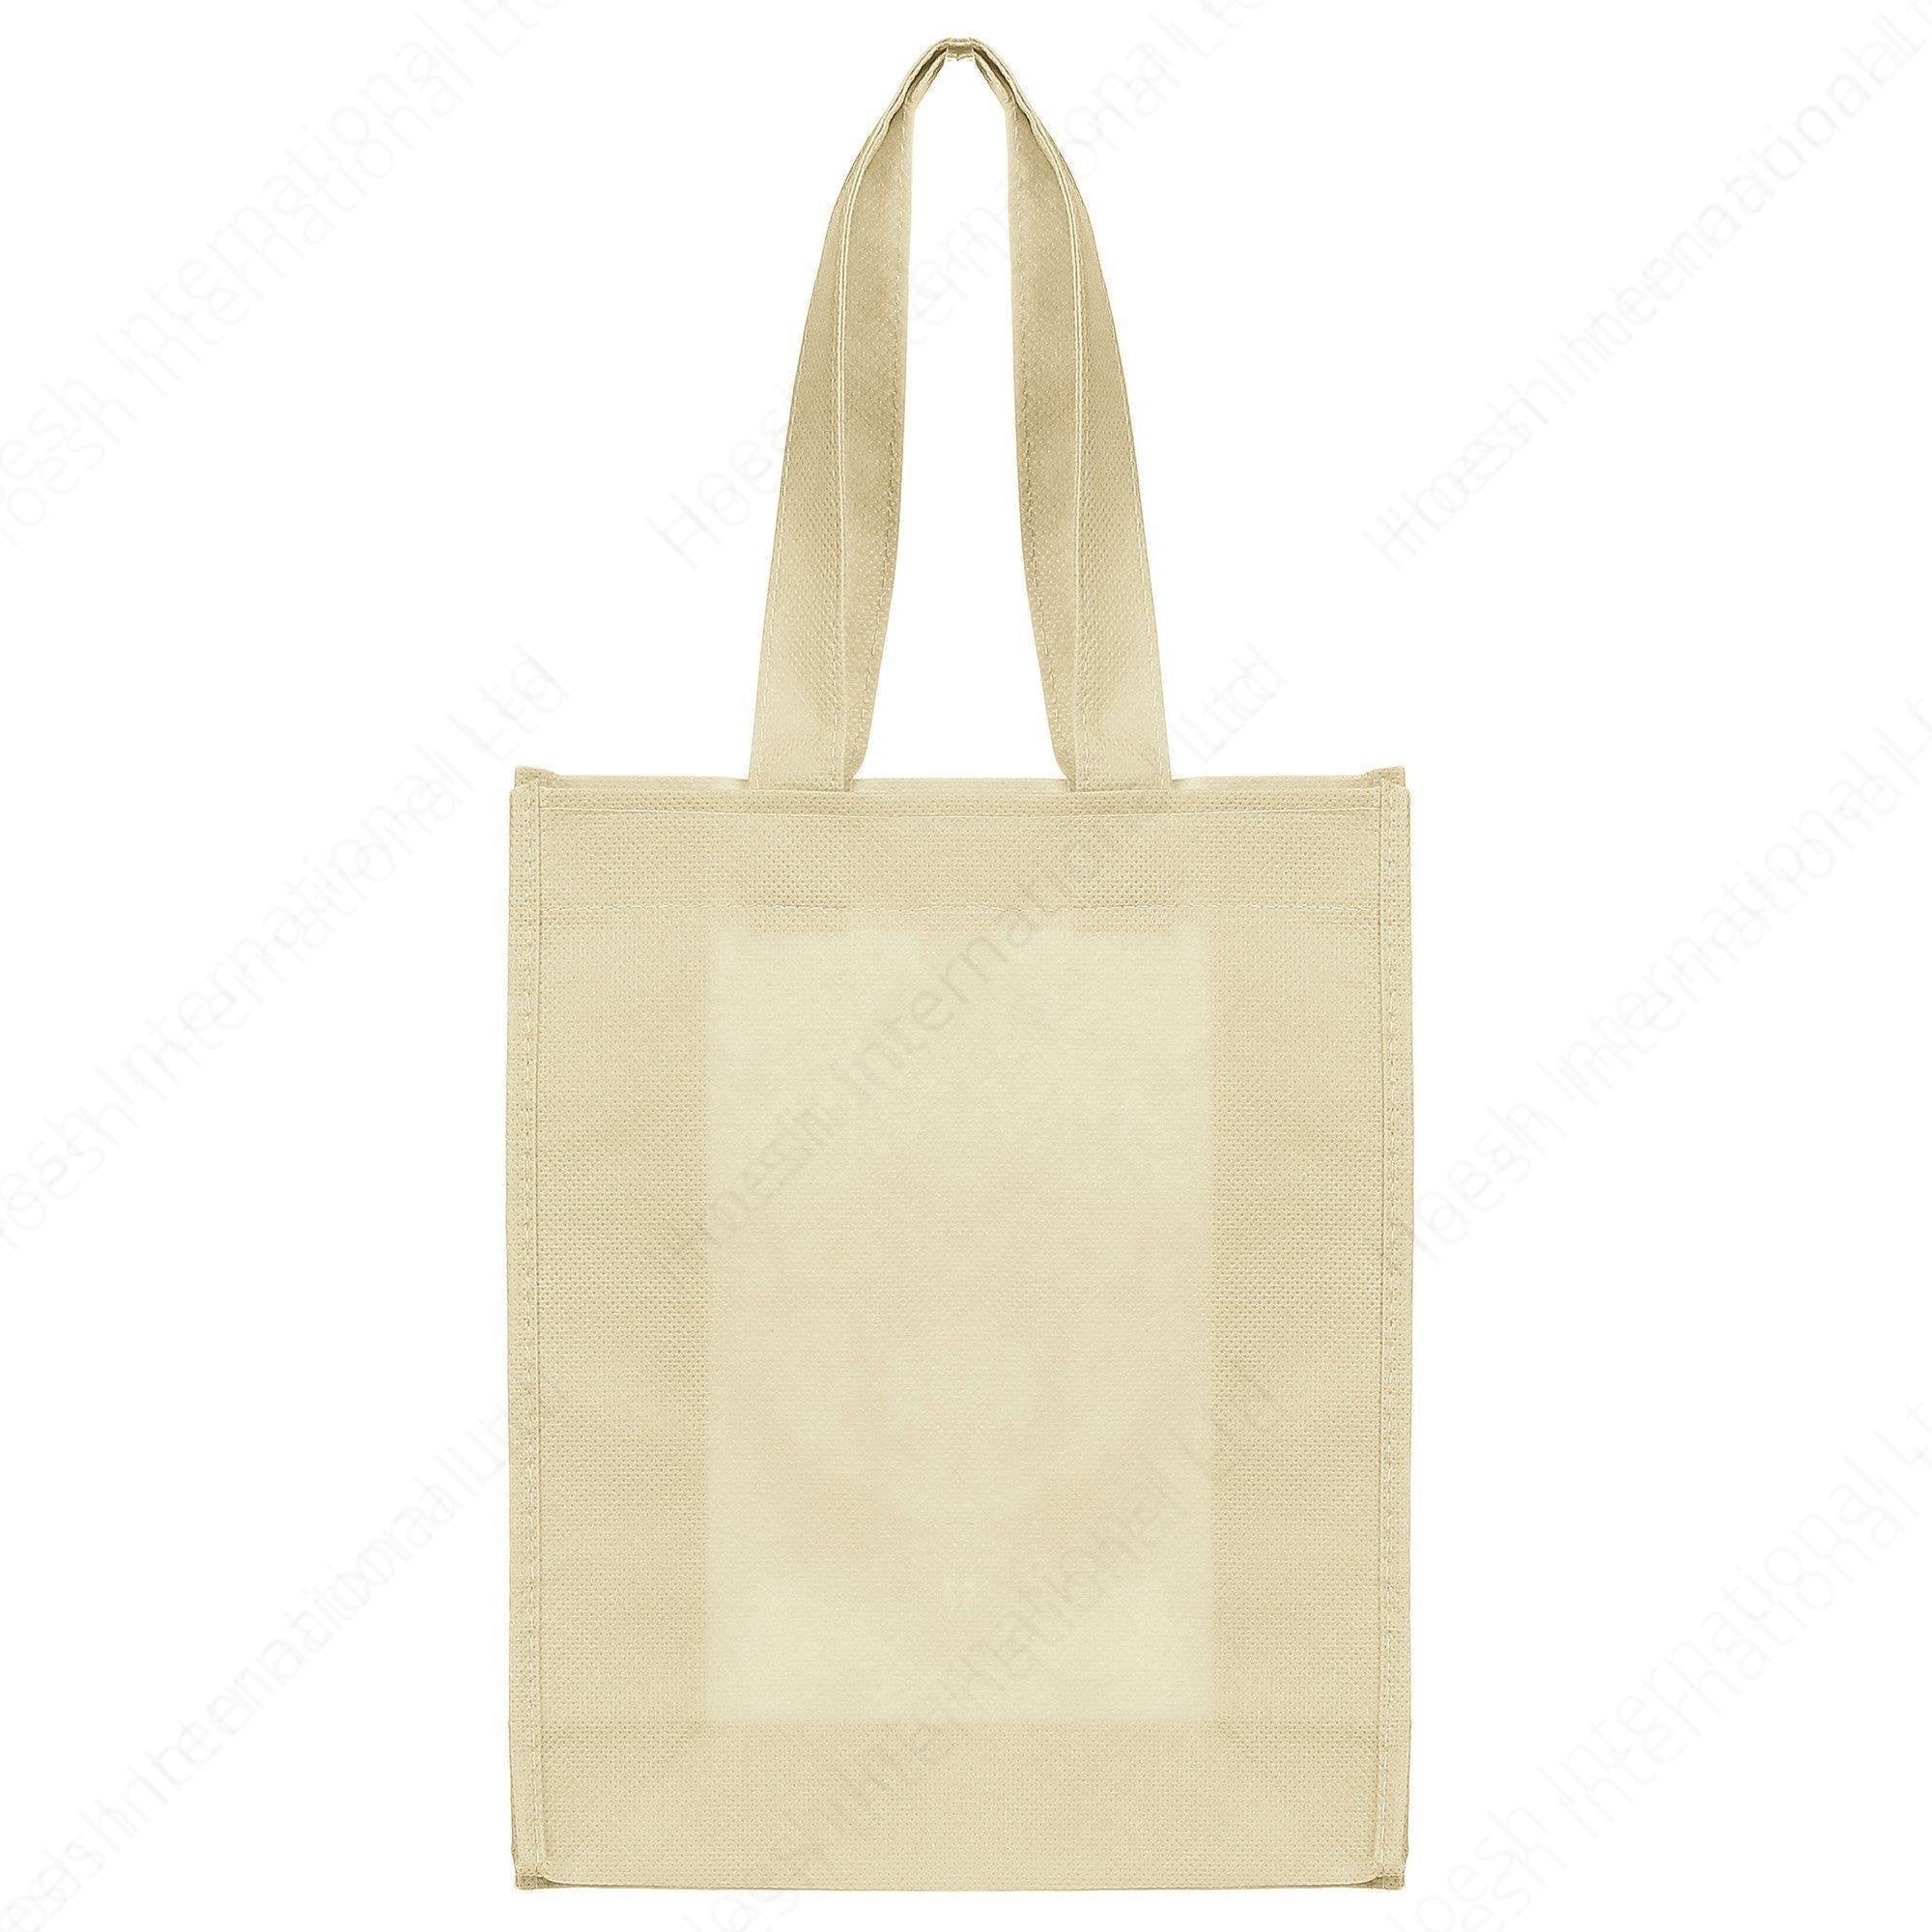 Non-Woven Carrier Bags - Hoesh International Ltd